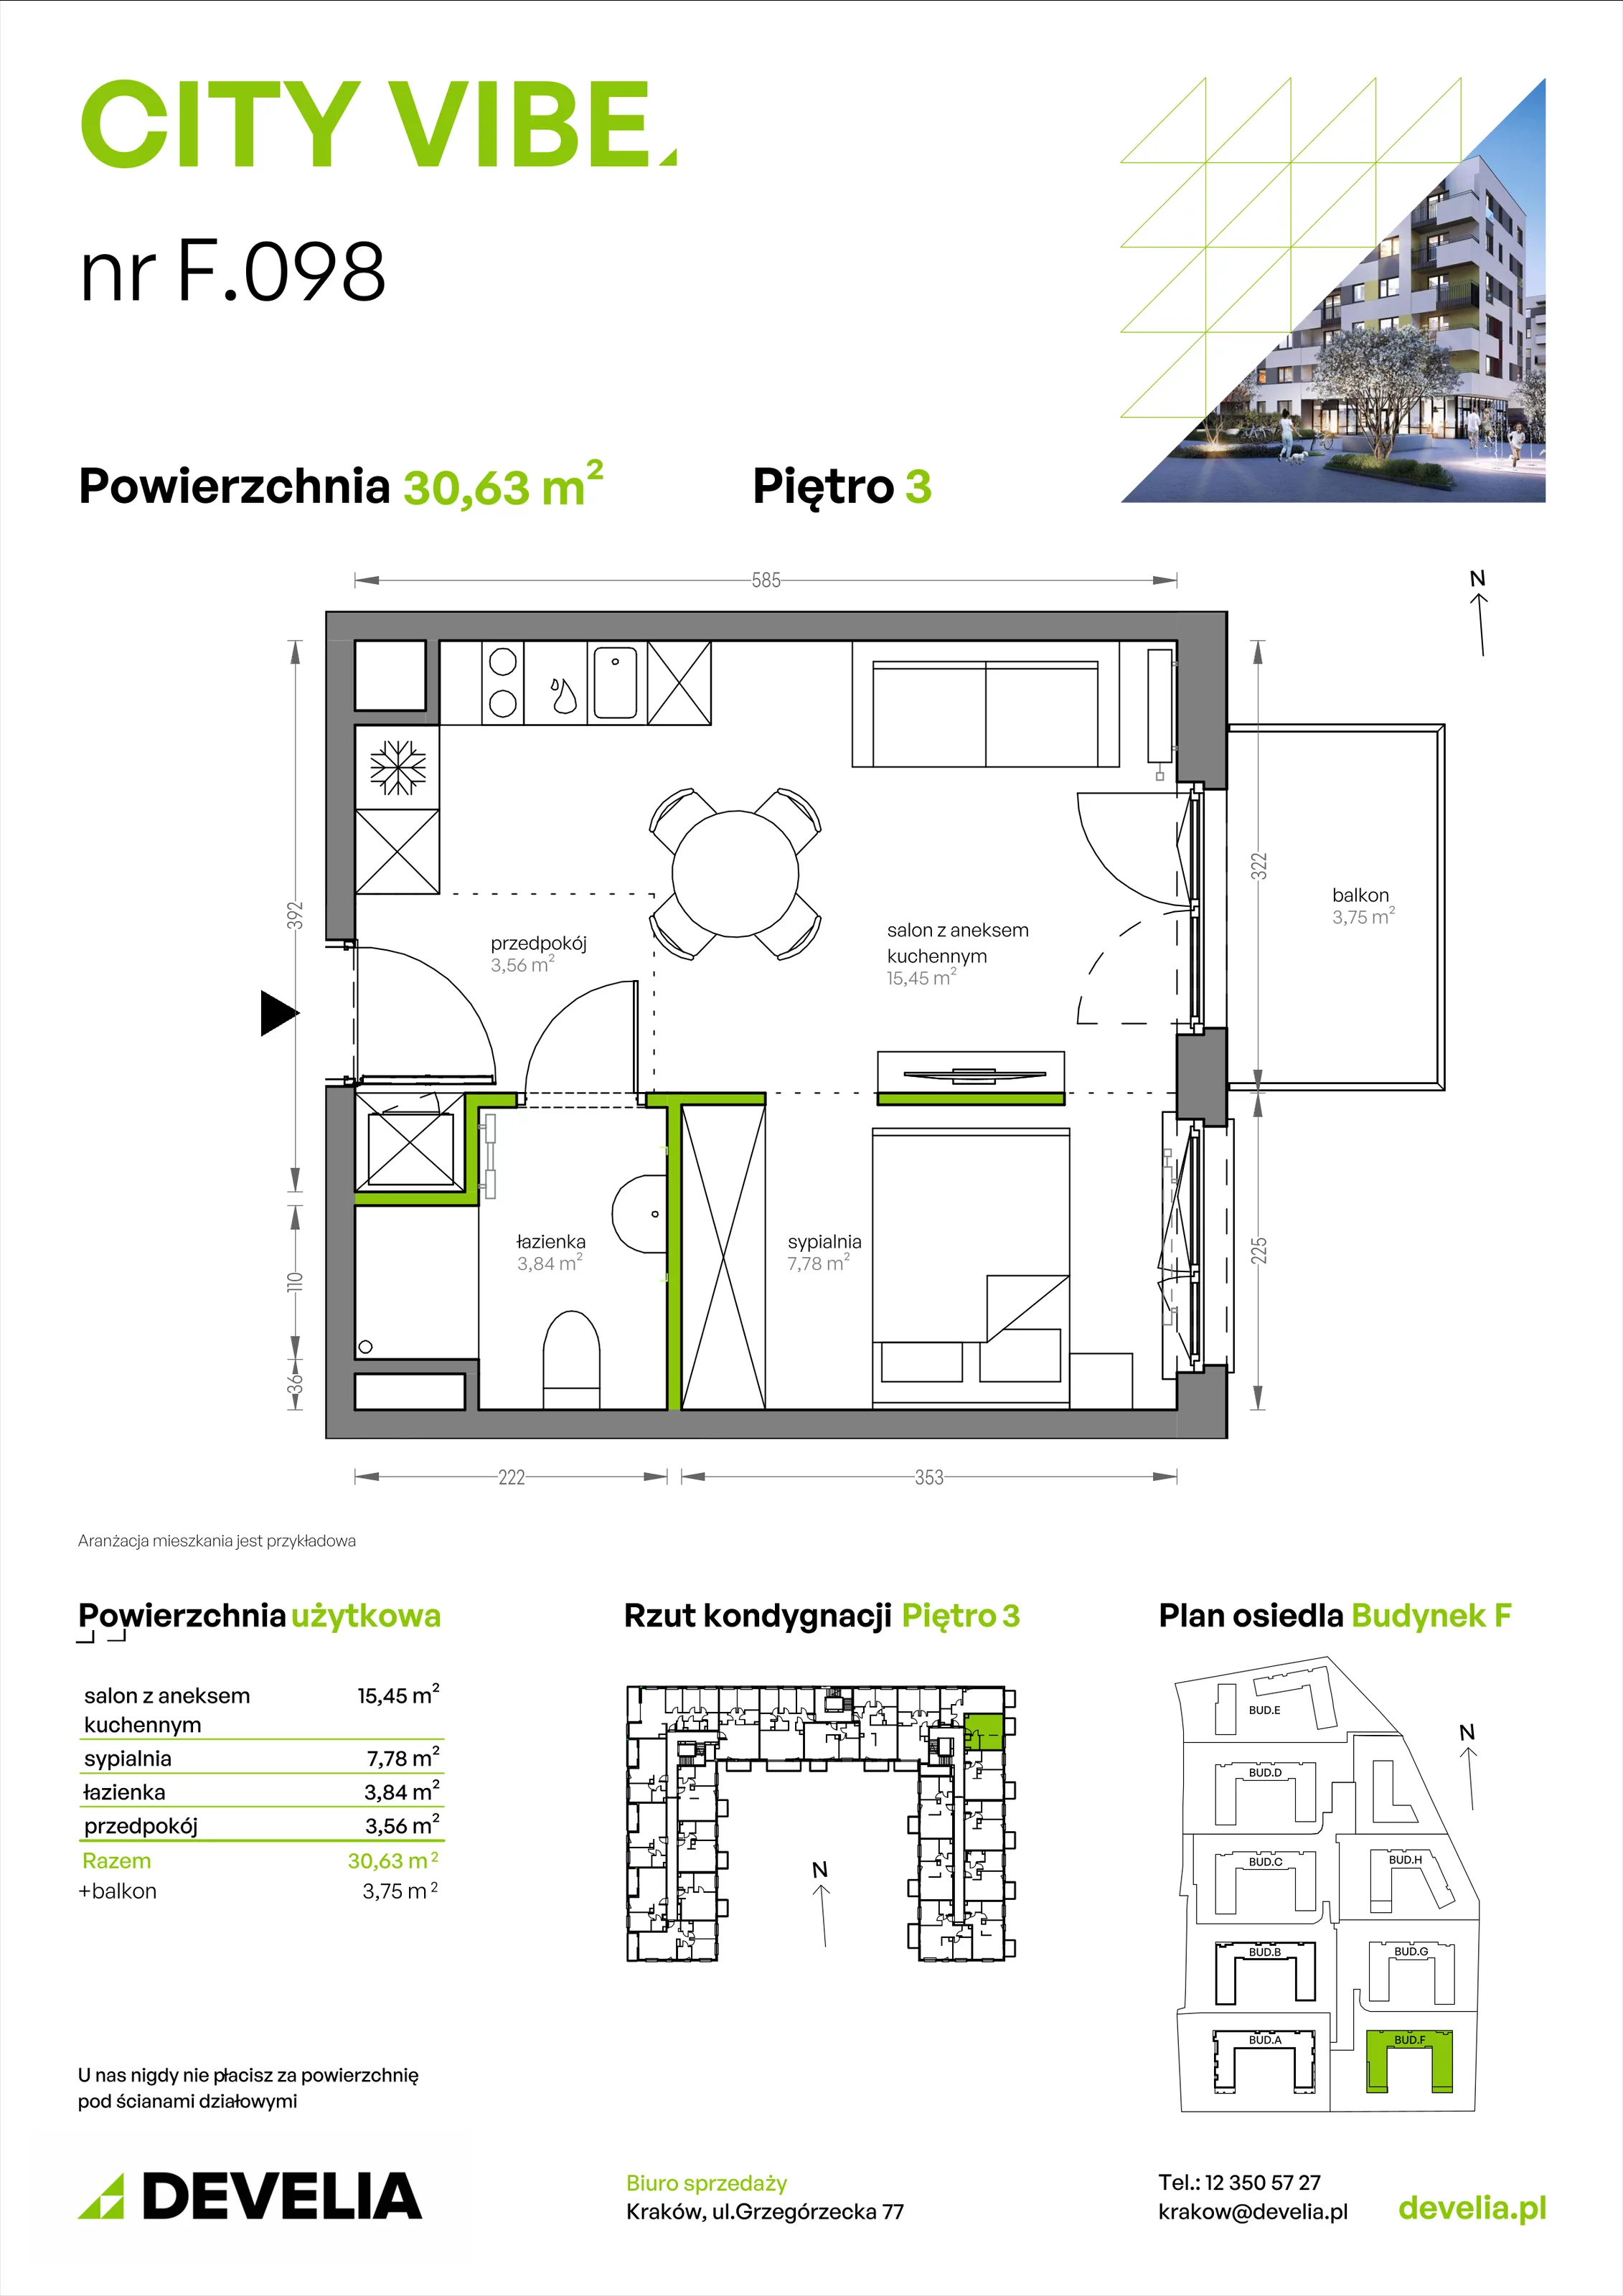 Mieszkanie 30,63 m², piętro 3, oferta nr F/098, City Vibe etap V, Kraków, Podgórze, Płaszów, ul. Myśliwska 68